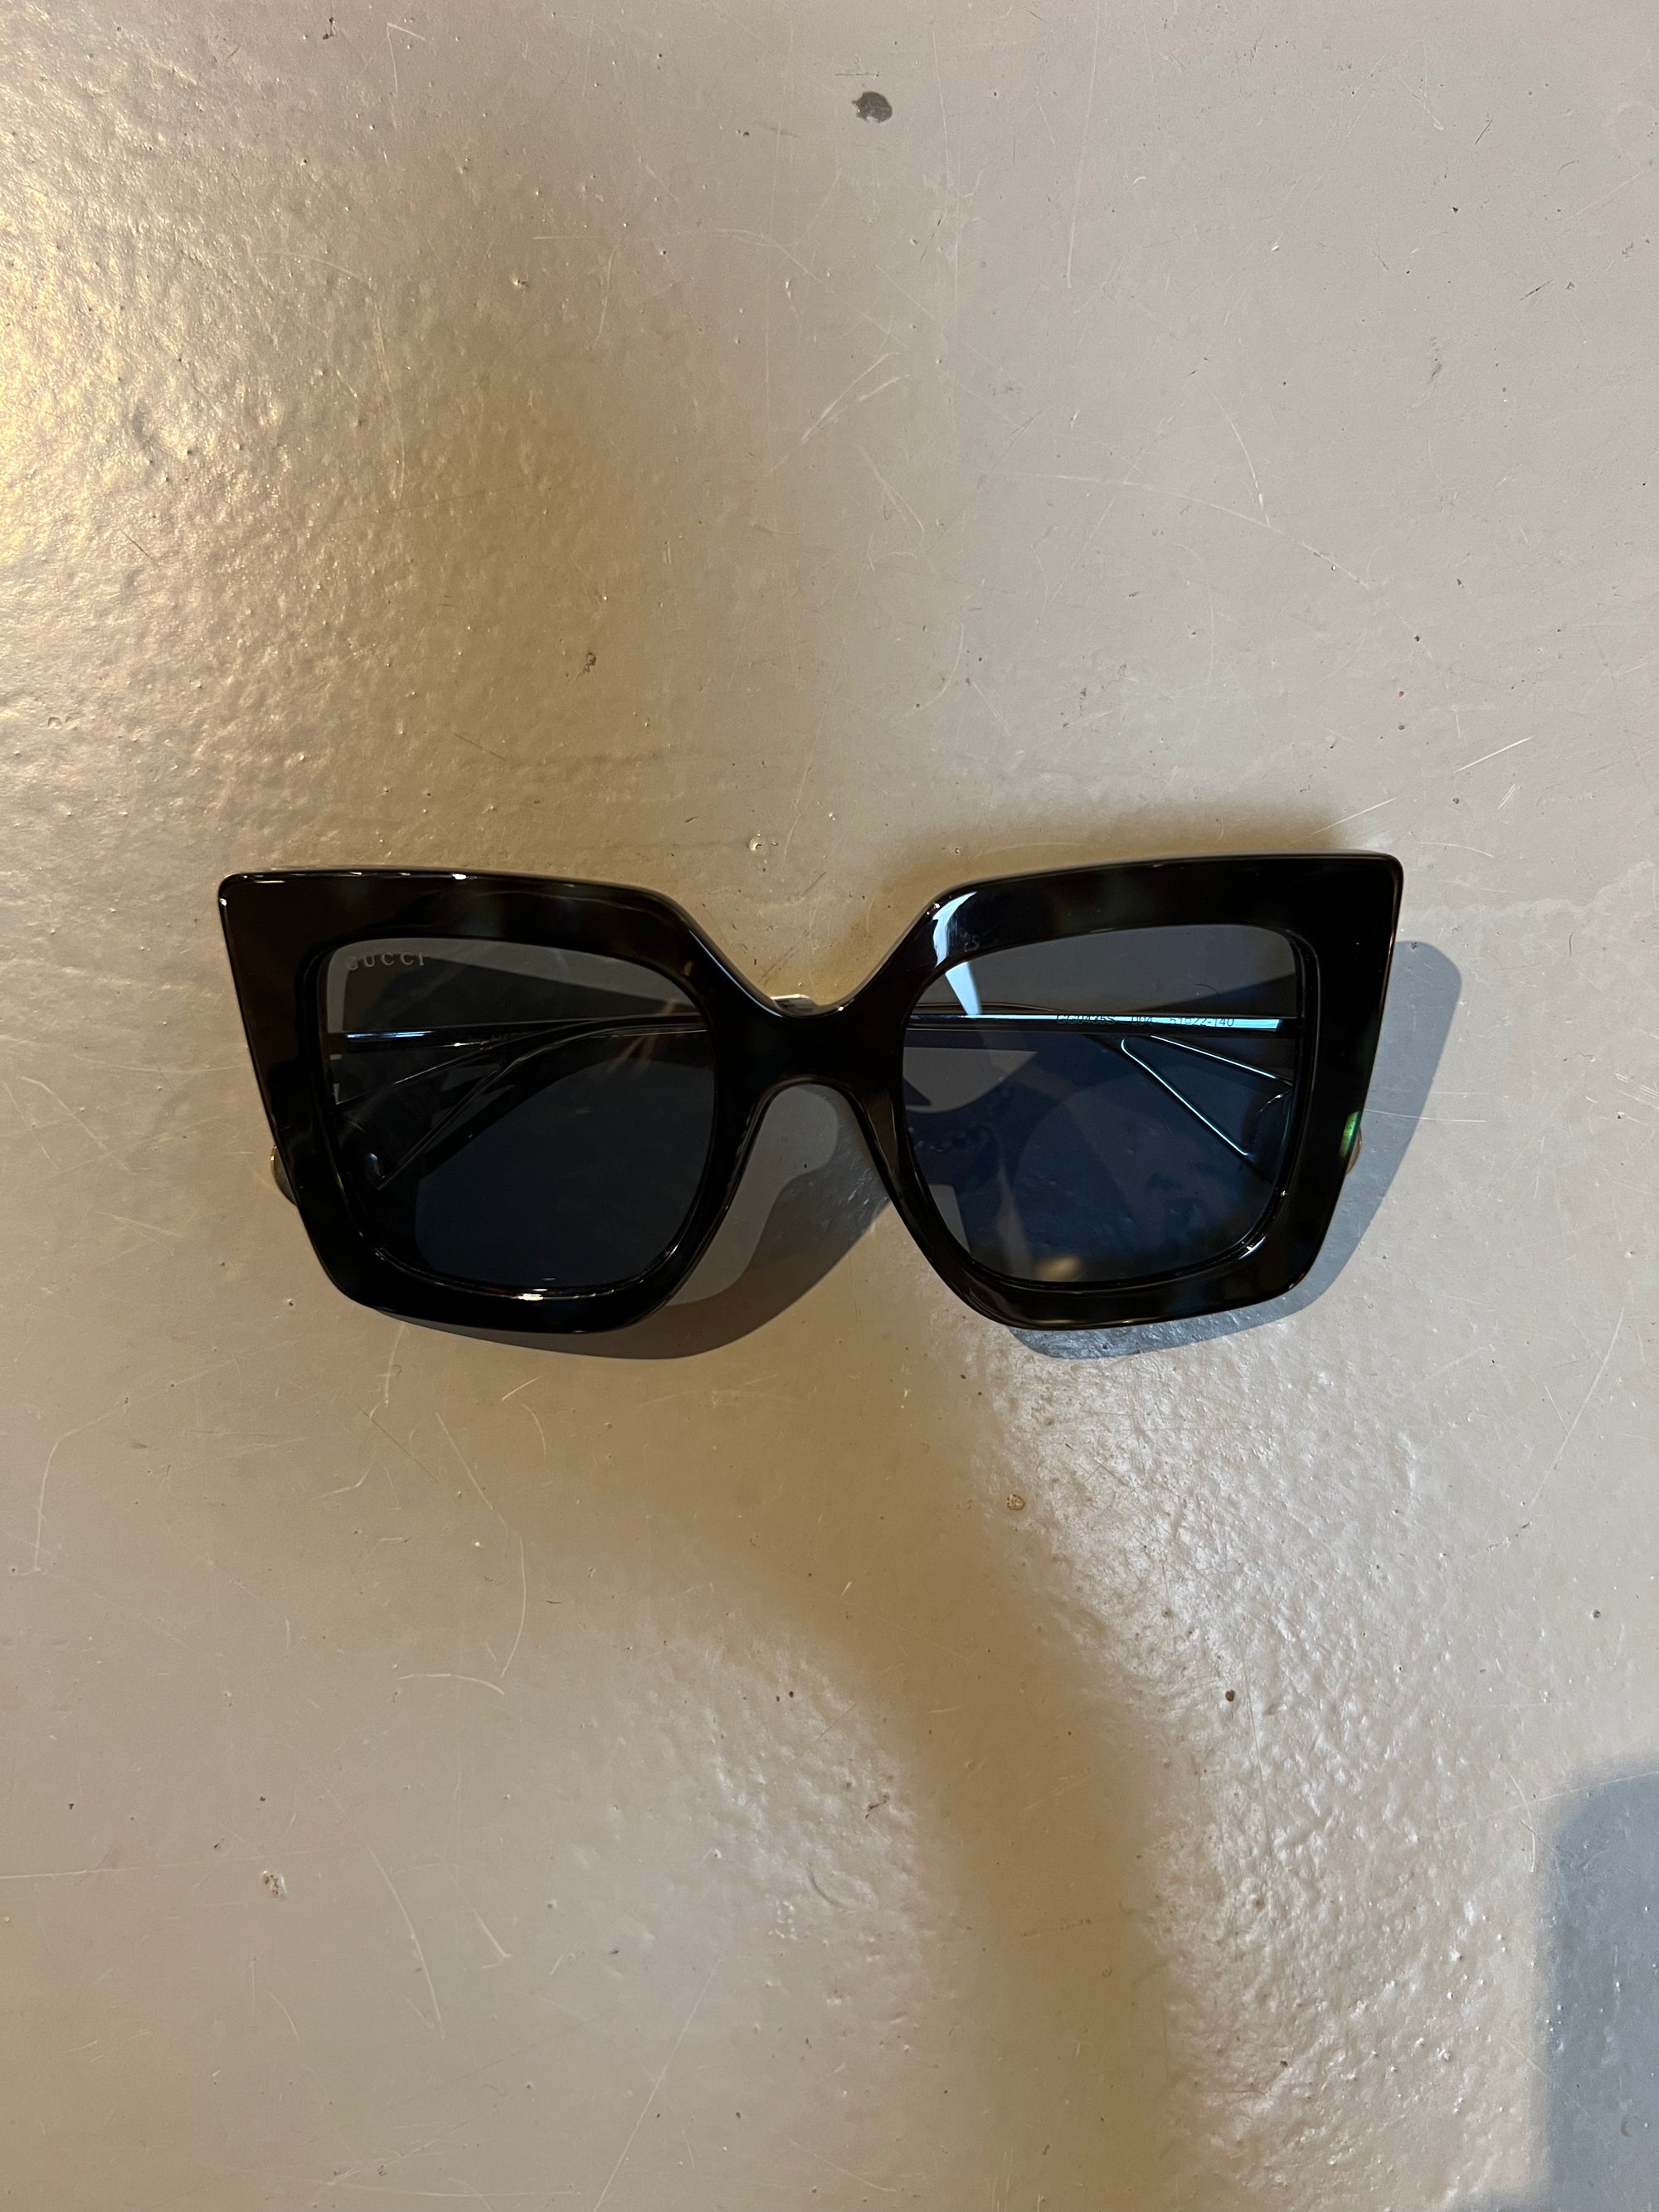 Produktbild der Gucci Sunglasses in Schwarz von vorne.